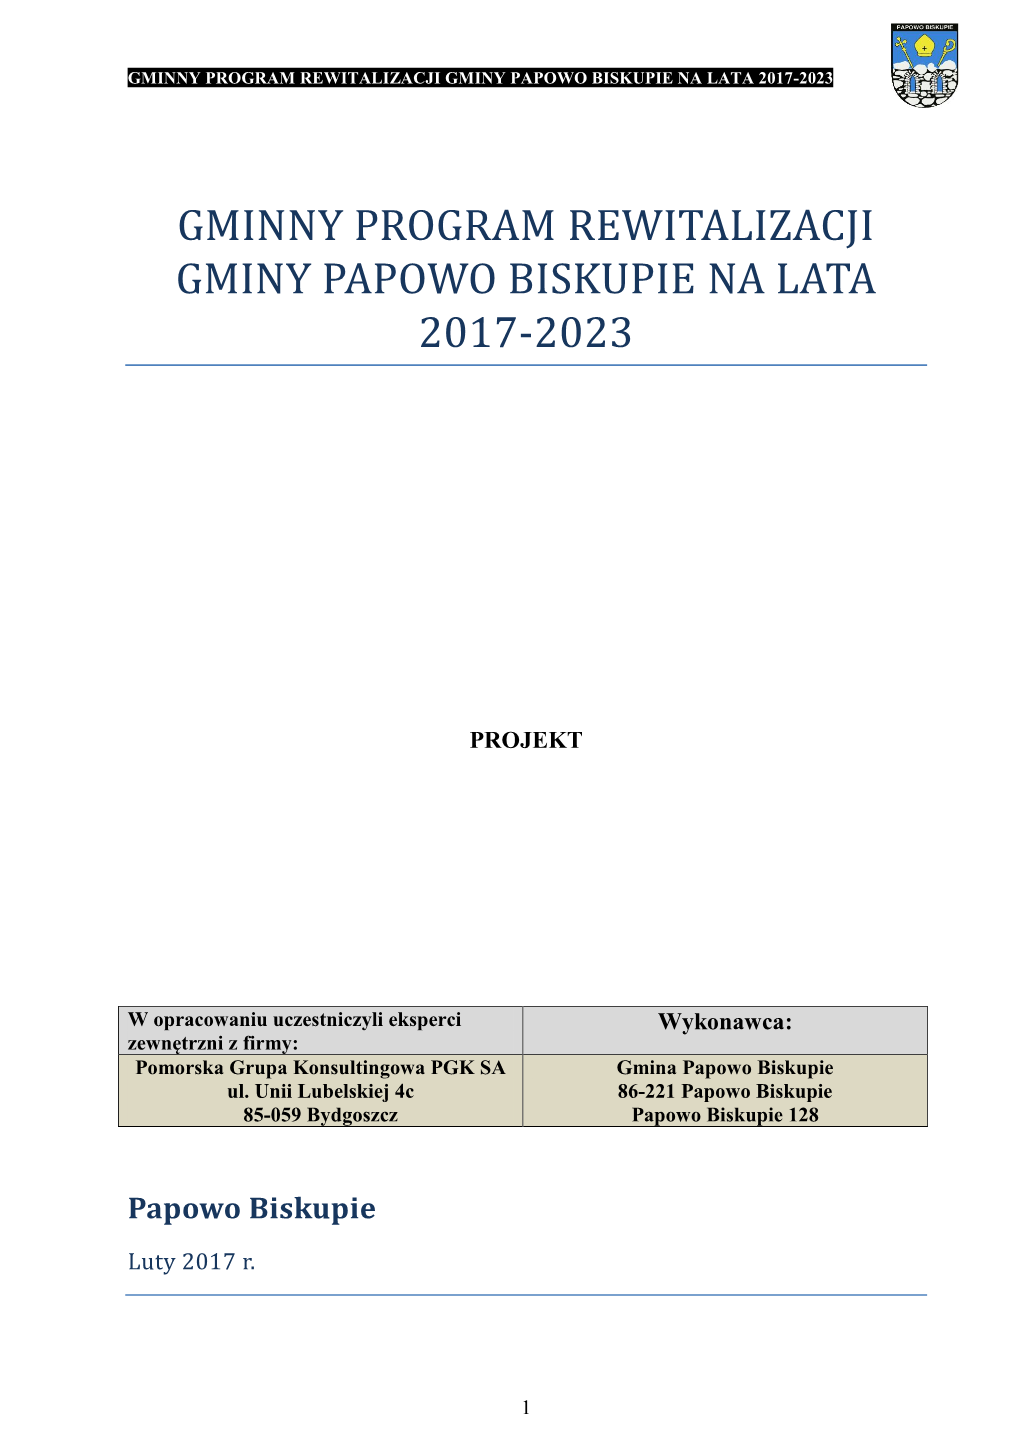 Gminny Program Rewitalizacji Gminy Papowo Biskupie Na Lata 2017-2023